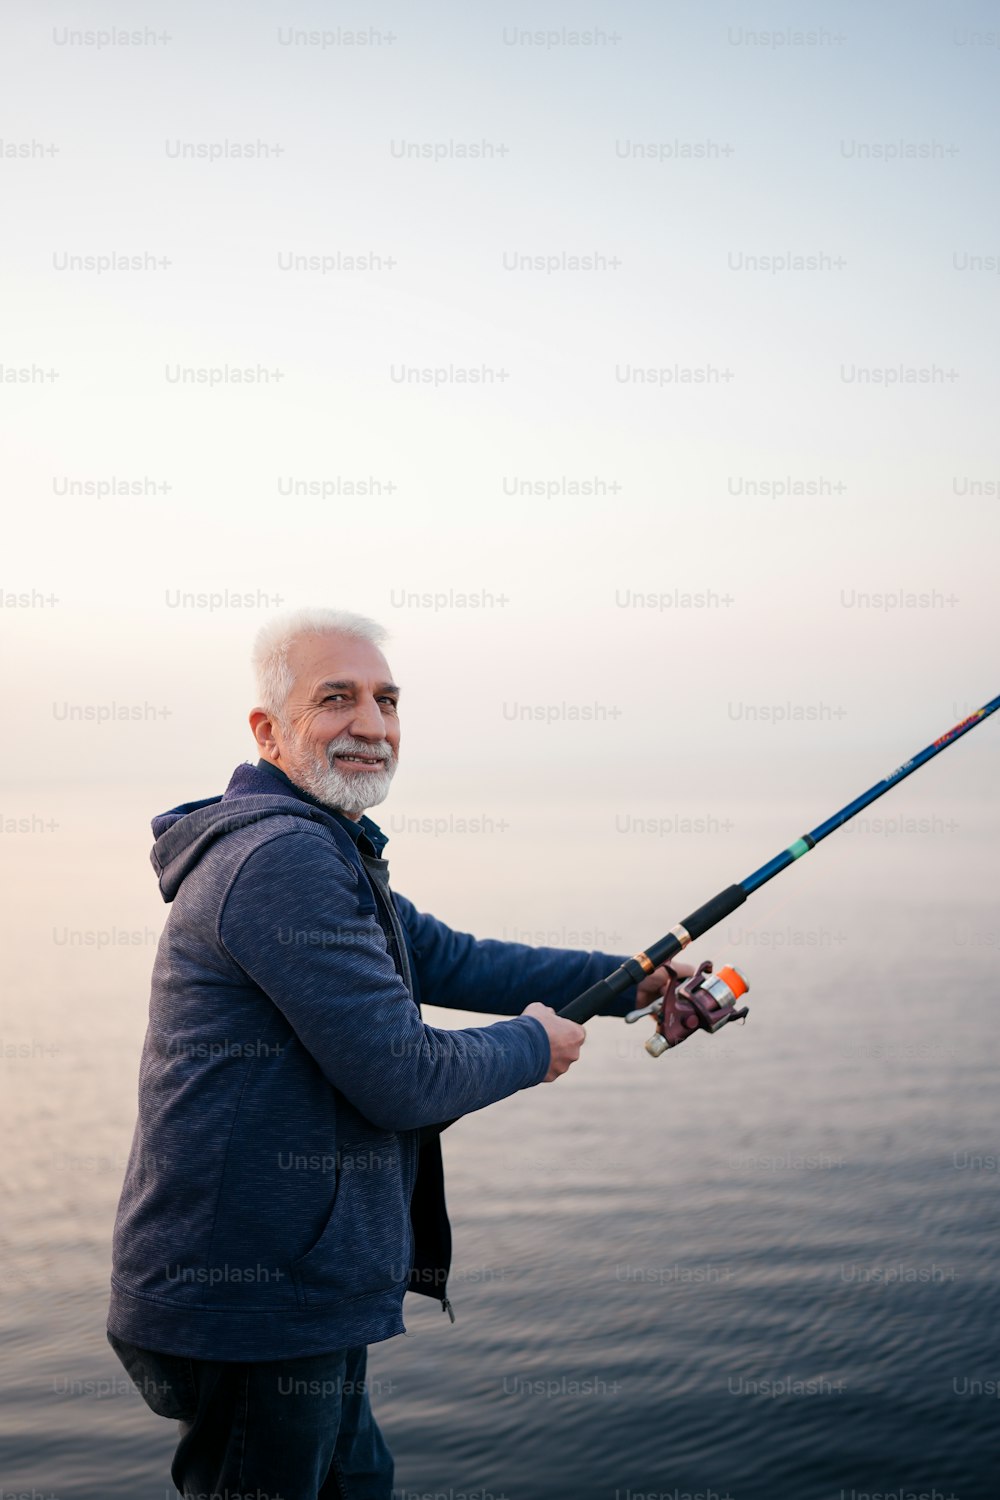 Un hombre parado en un bote sosteniendo una caña de pescar